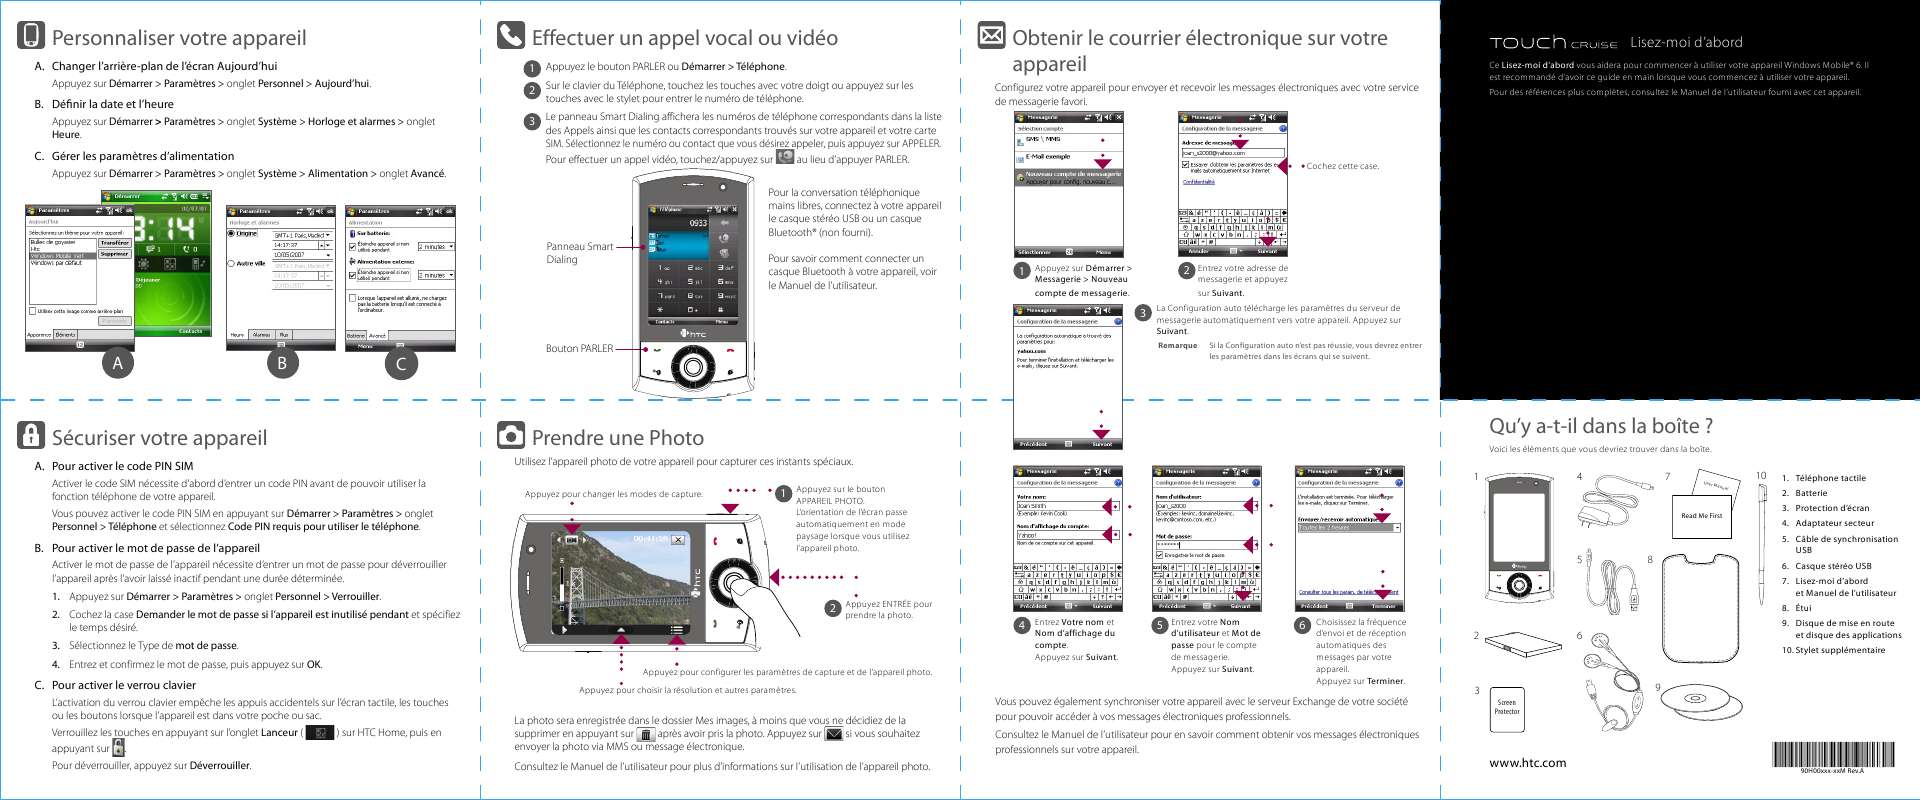 Guide utilisation HTC P3650  de la marque HTC